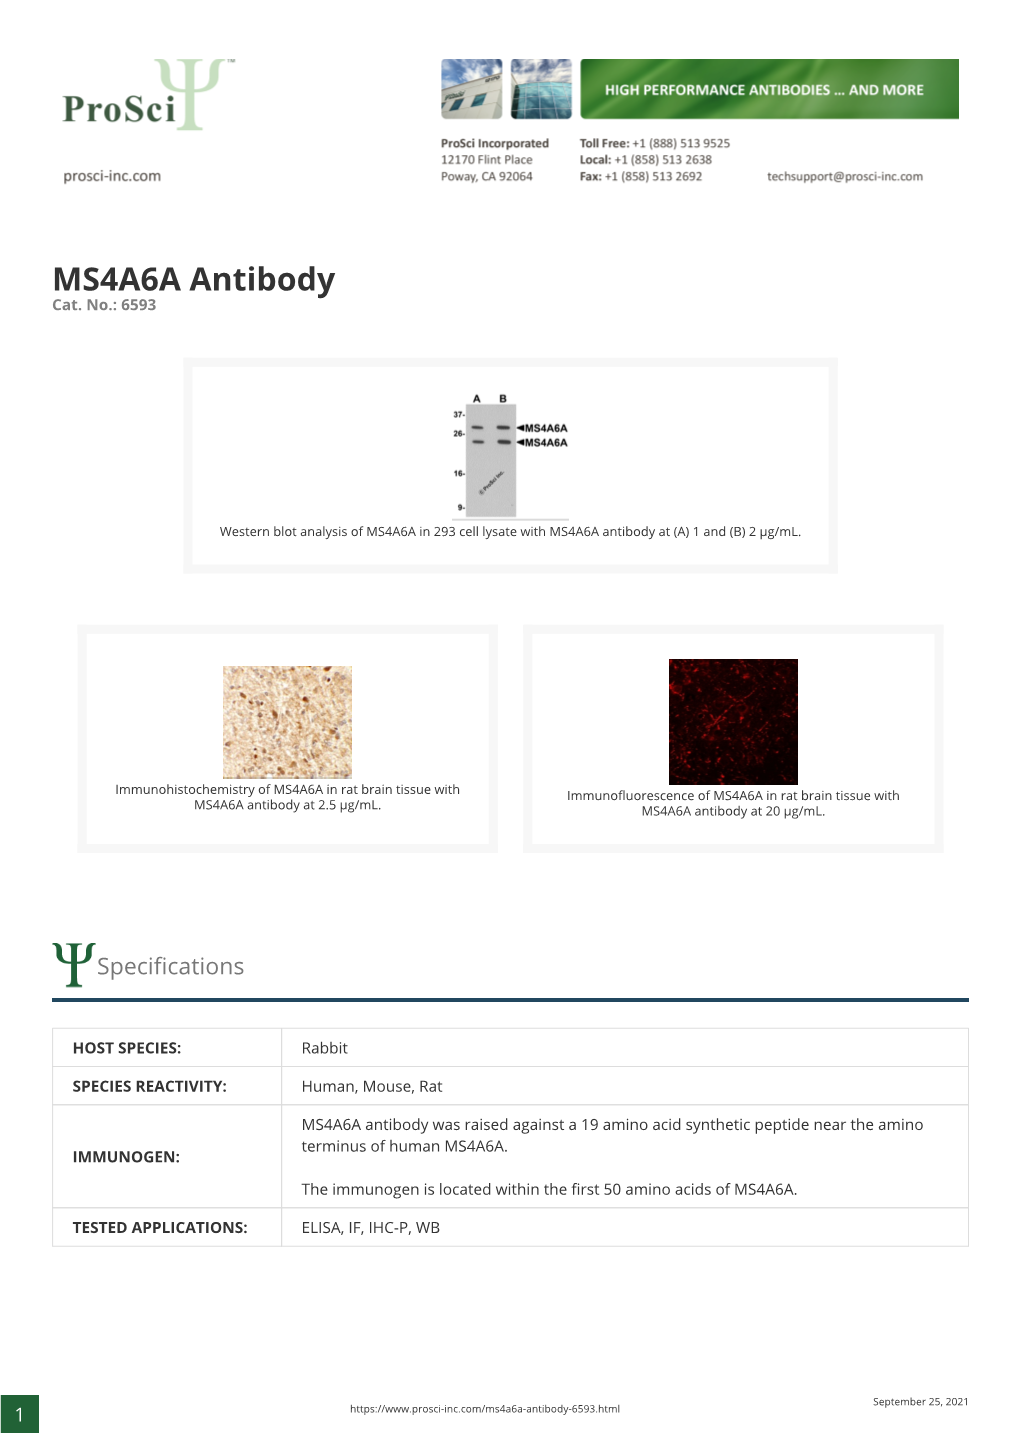 MS4A6A Antibody Cat